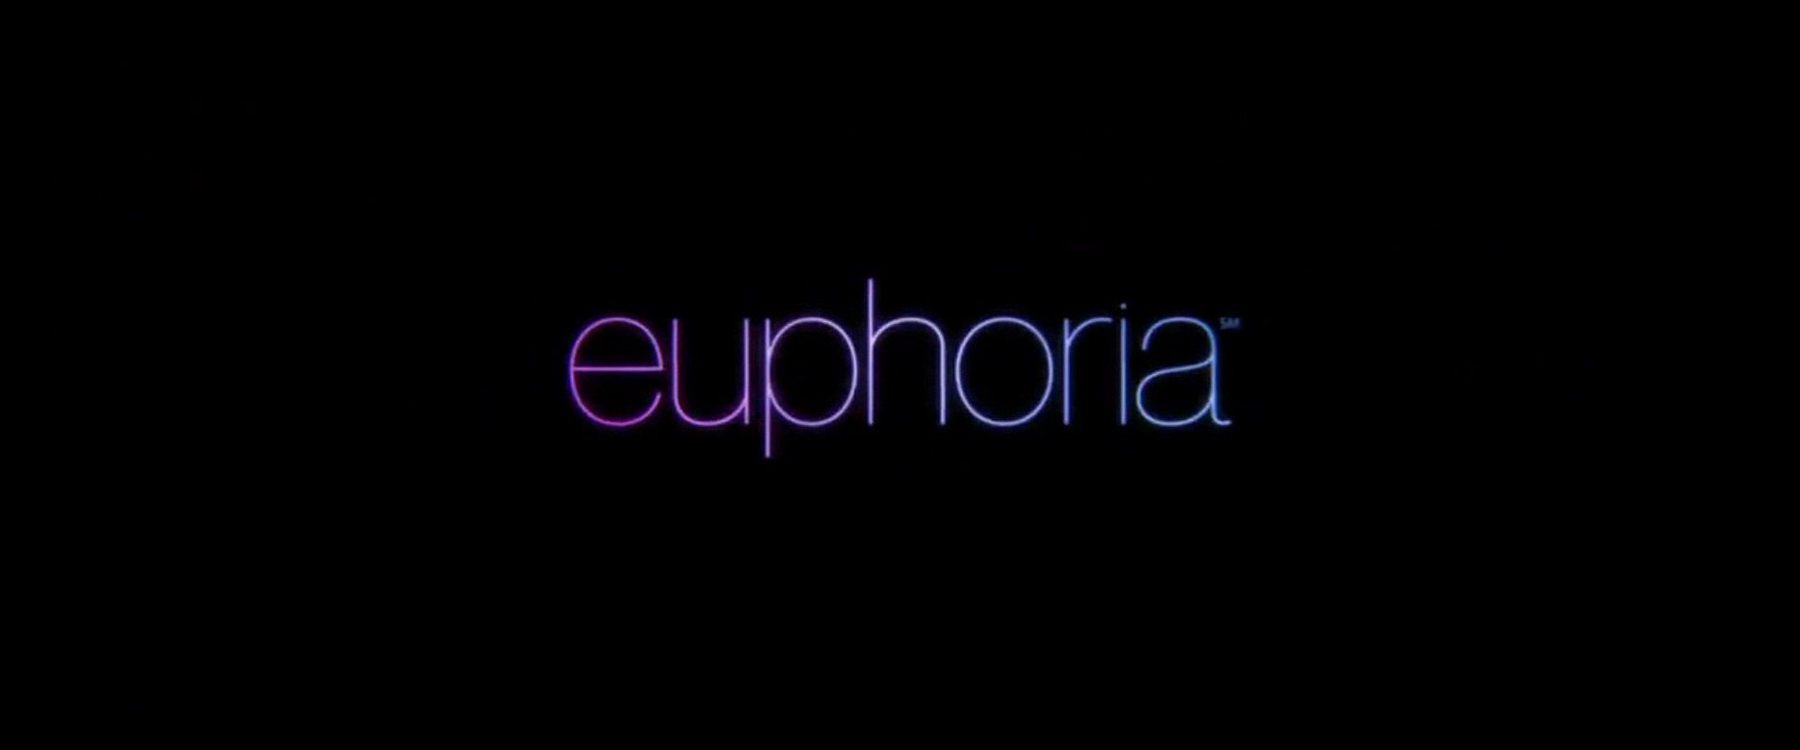 Eufória (Euphoria)